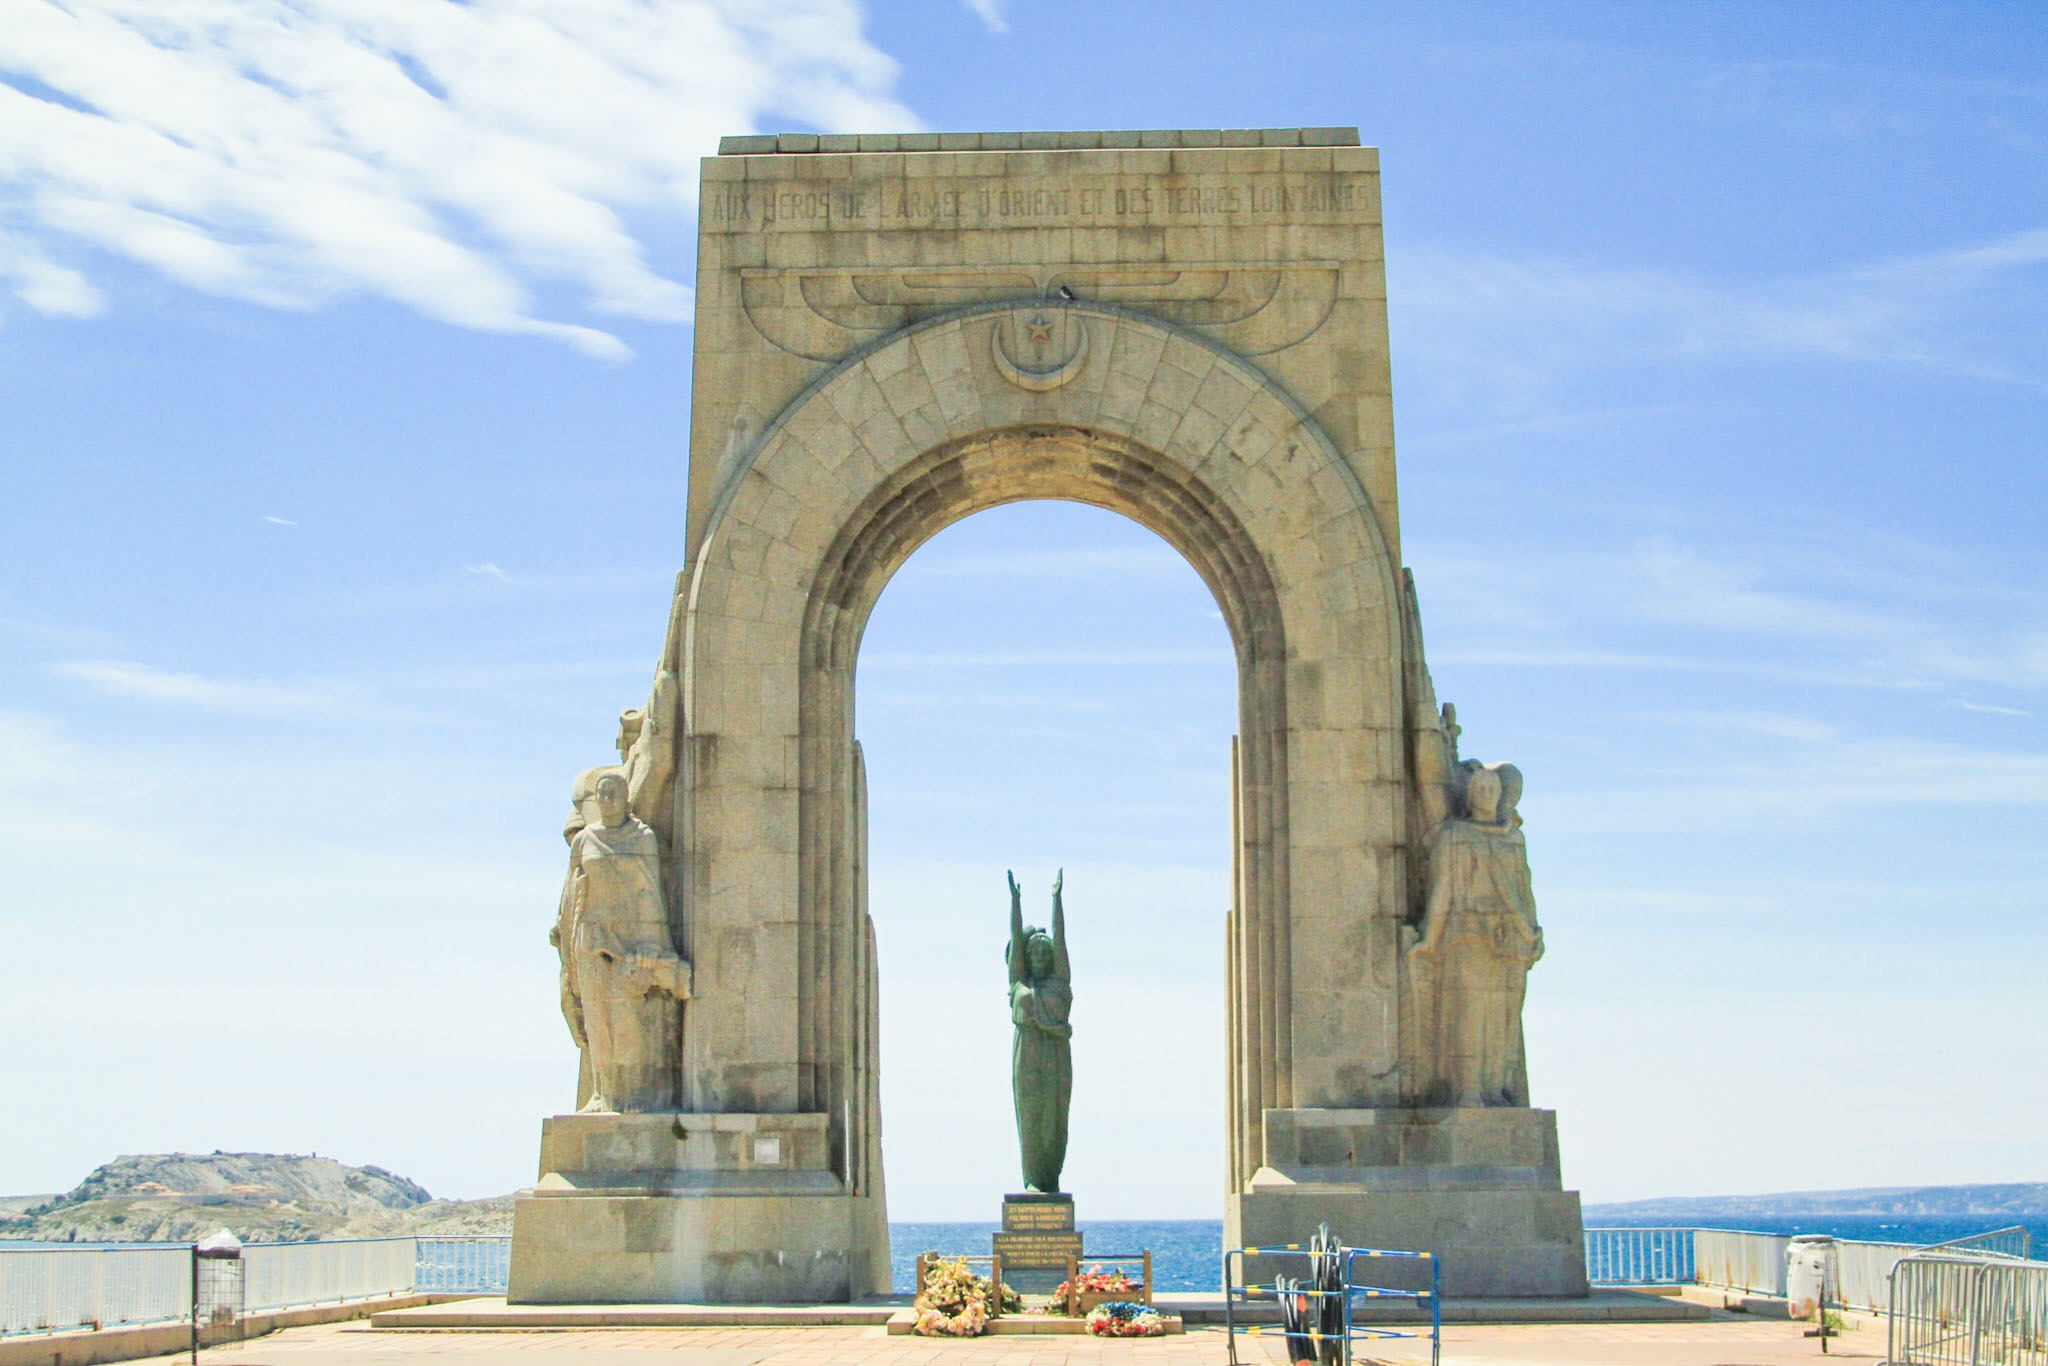 La Porte de l'Orient in Marseille, France #mfrancisdesigntravels